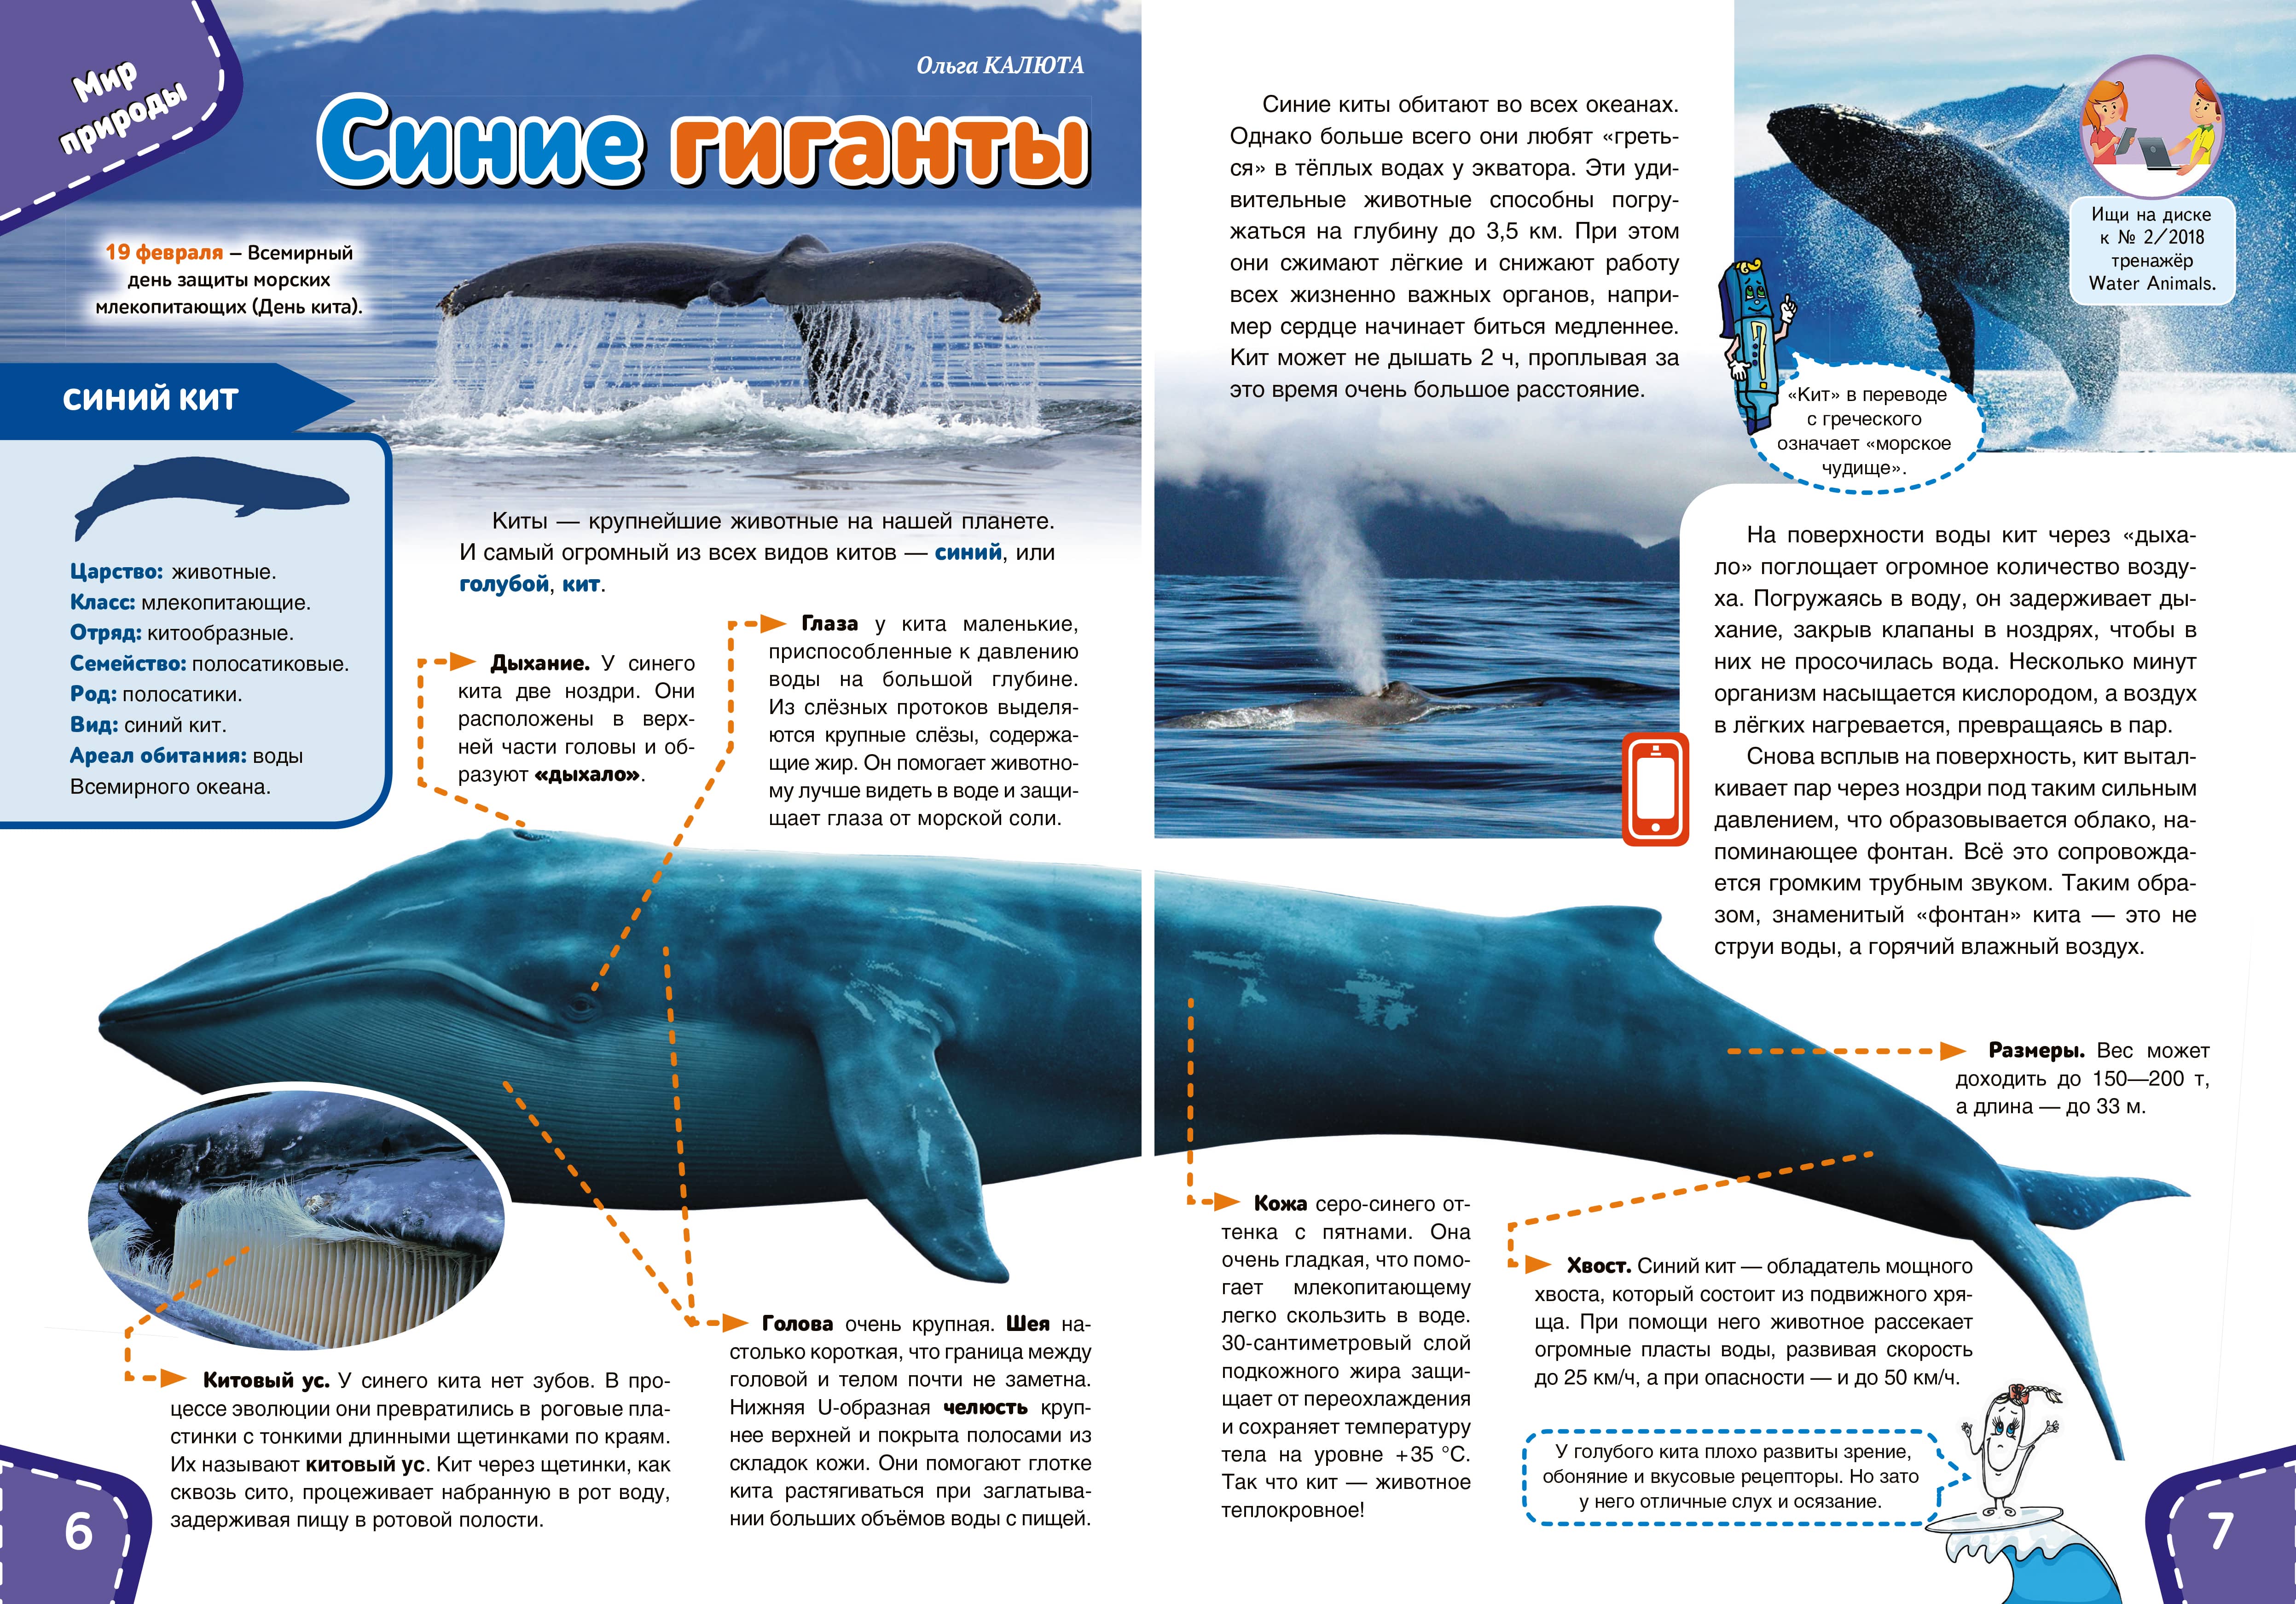 Физиологические признаки синего кита. Синий кит. Голубой кит. Размеры синих китов. Синий кит Размеры.